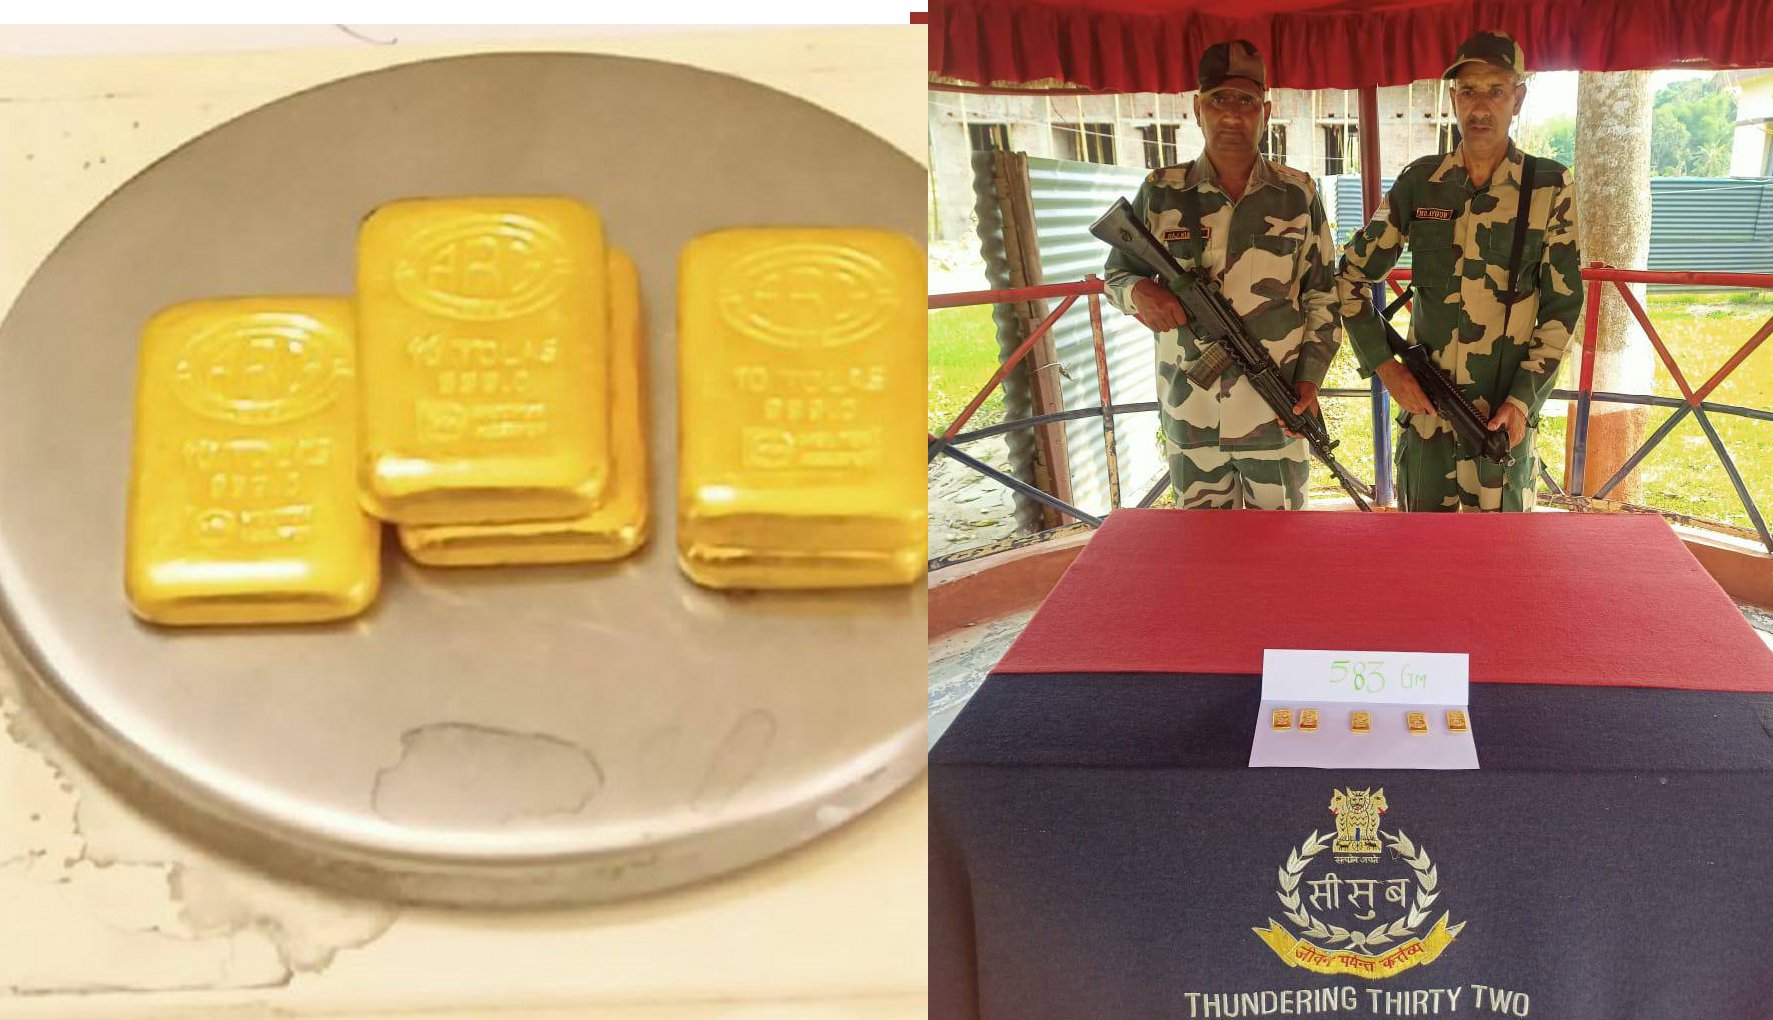 अंतरराष्ट्रीय सीमा पर 42 लाख रुपया का सोने का बिस्कुट बरामद, बीएसएफ चला रही है
तलाशी अभियान